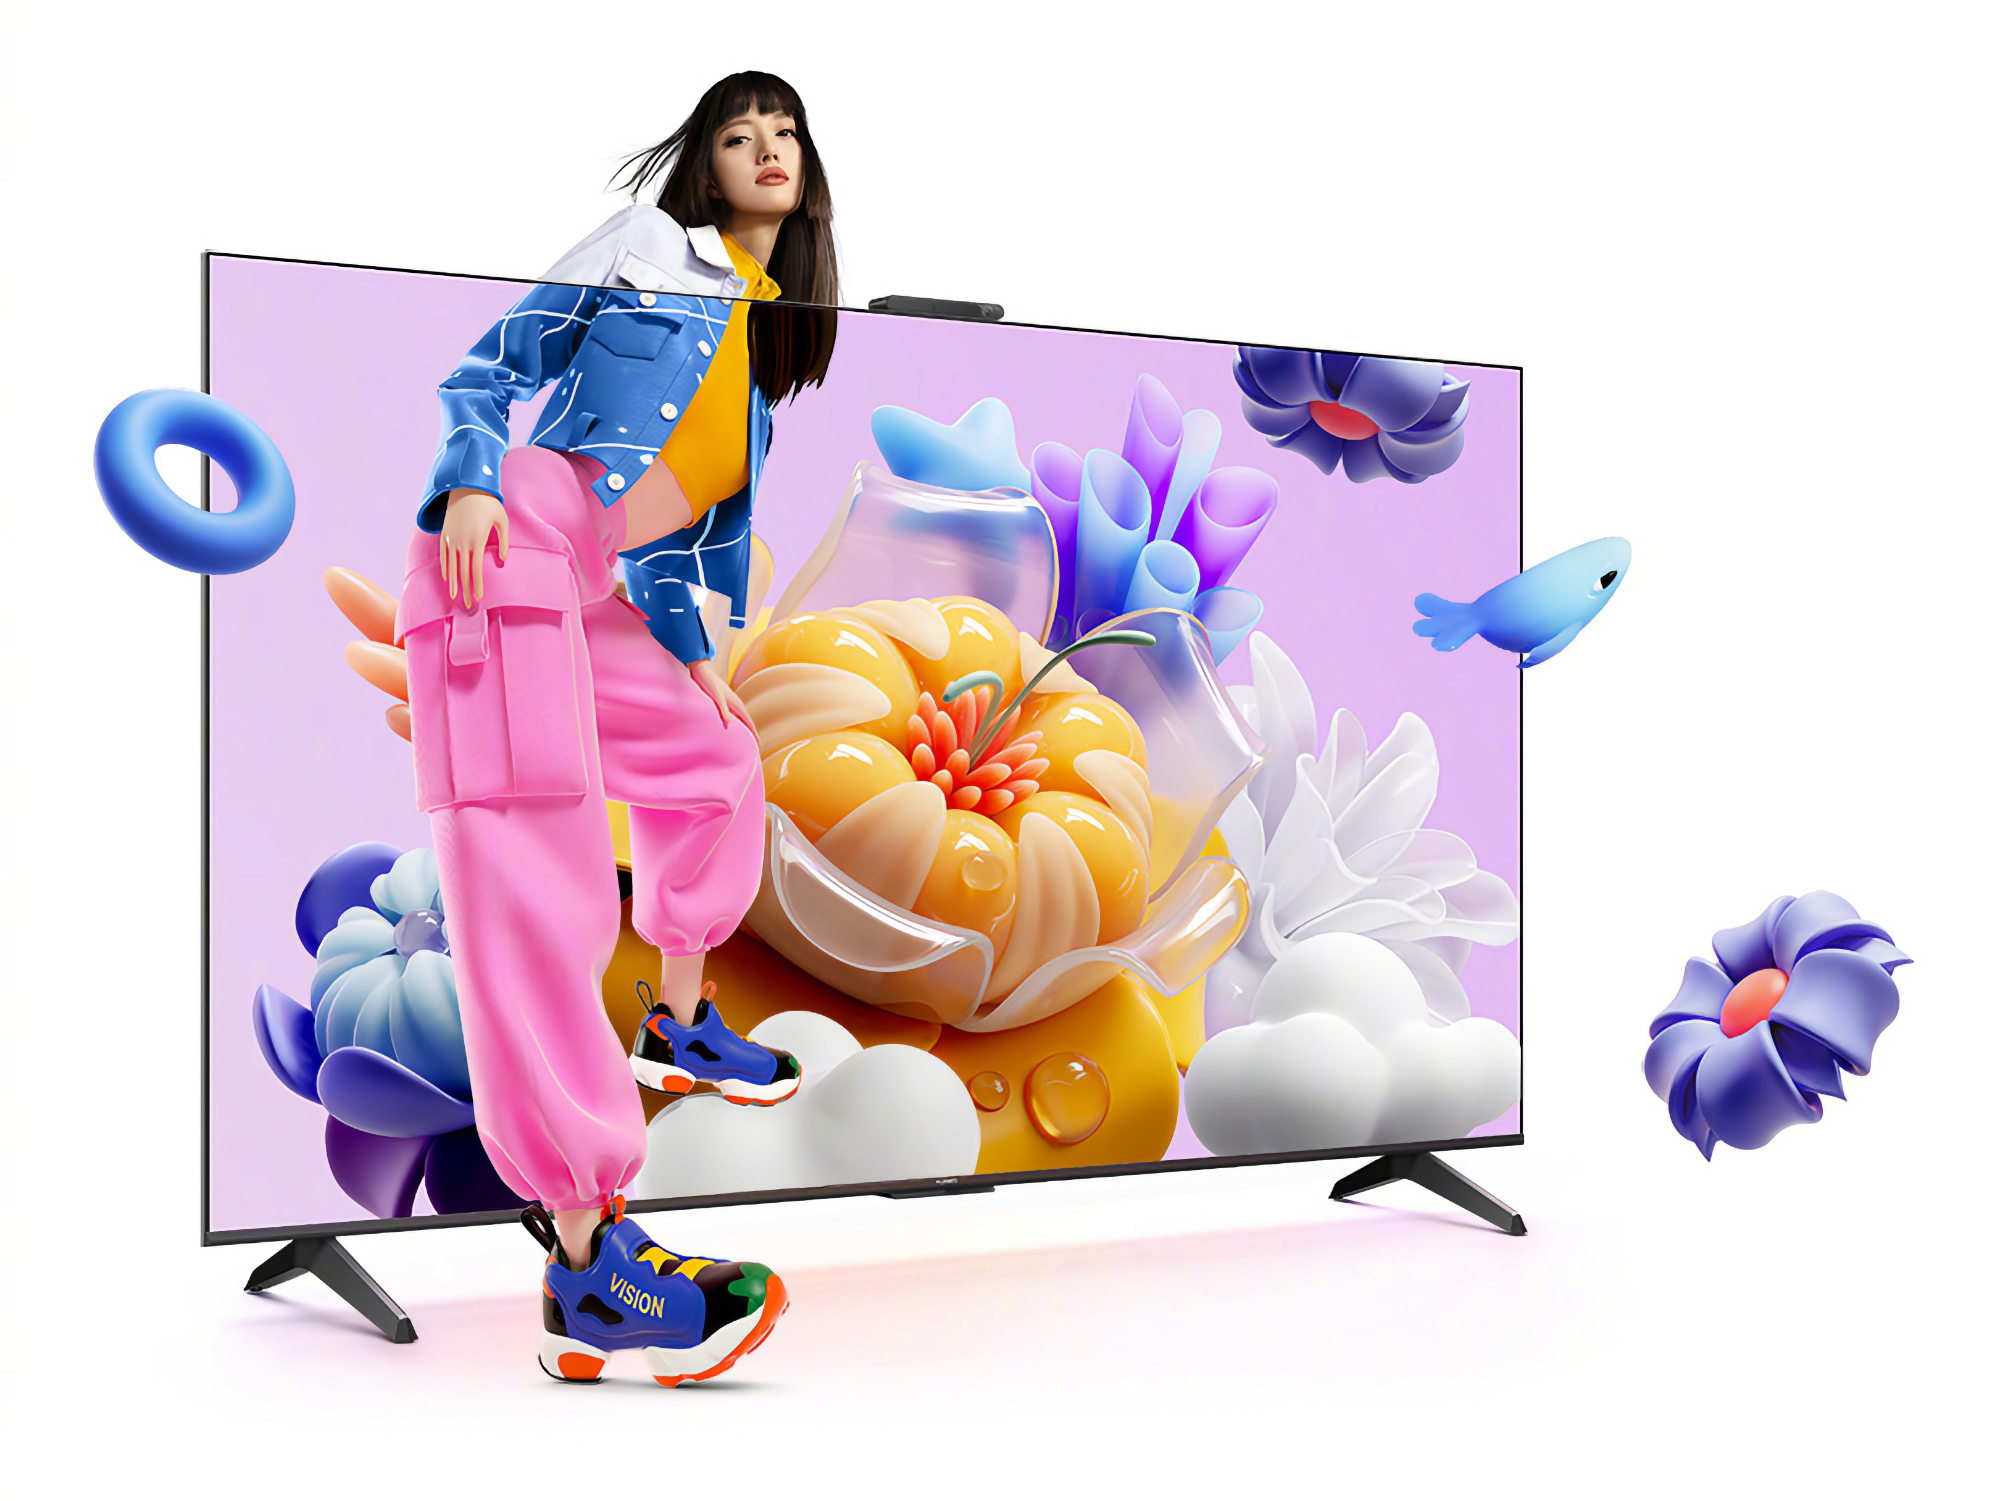 Huawei Vision Smart TV SE3: eine Reihe von Smart-TVs mit 4K-Bildschirmen bei 120 Hz und HarmonyOS an Bord zu Preisen ab 340 US-Dollar